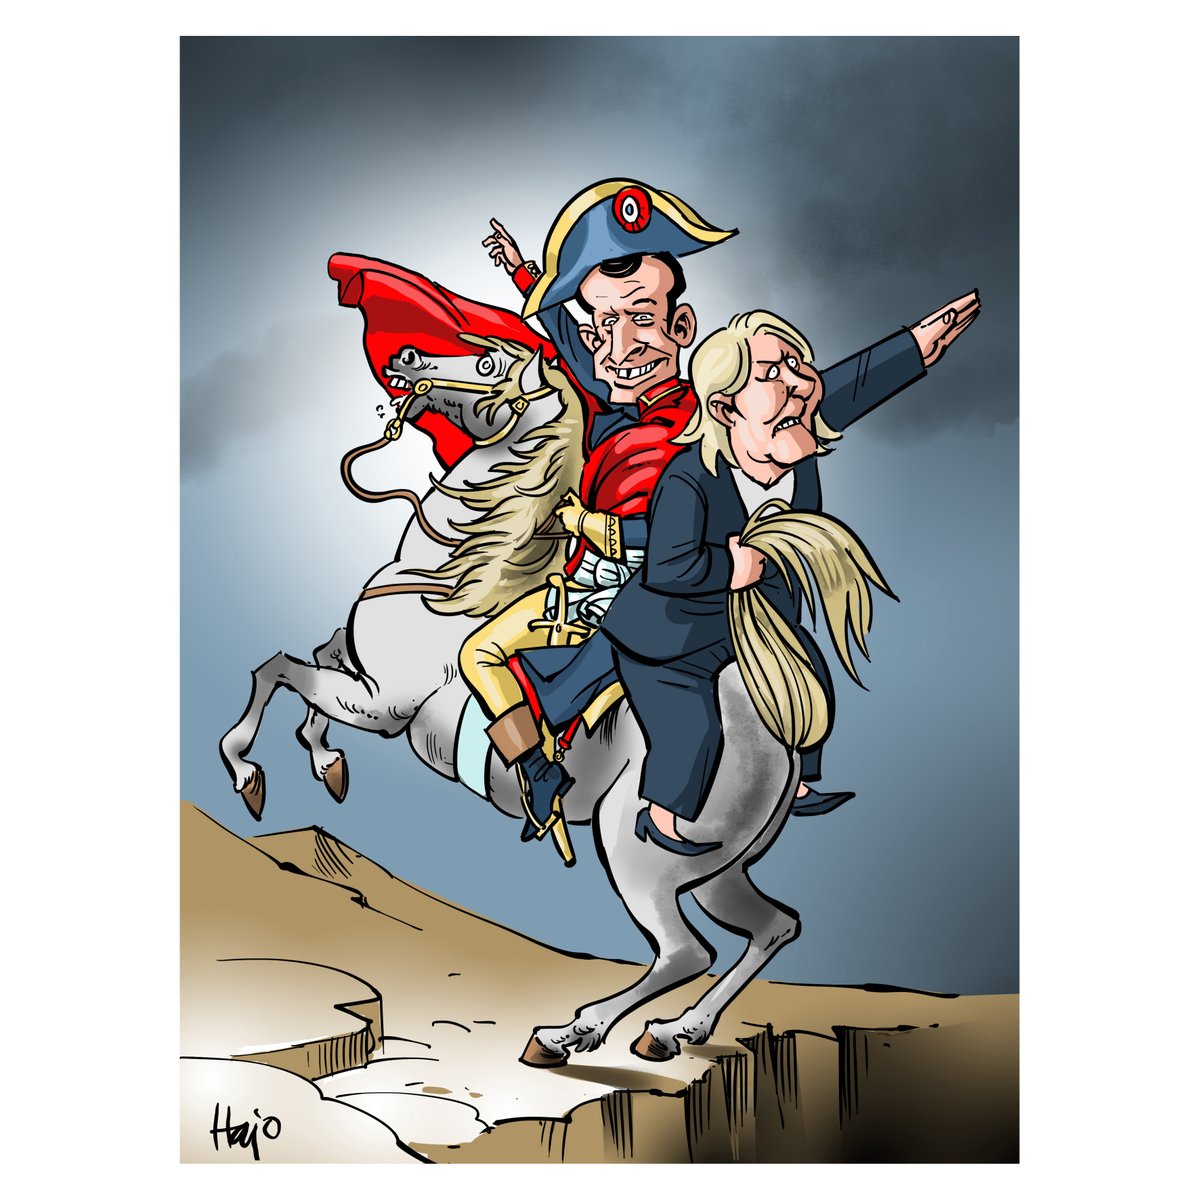 #frenchelections #france #Macron #LePen #Napoleon #nazi #direction